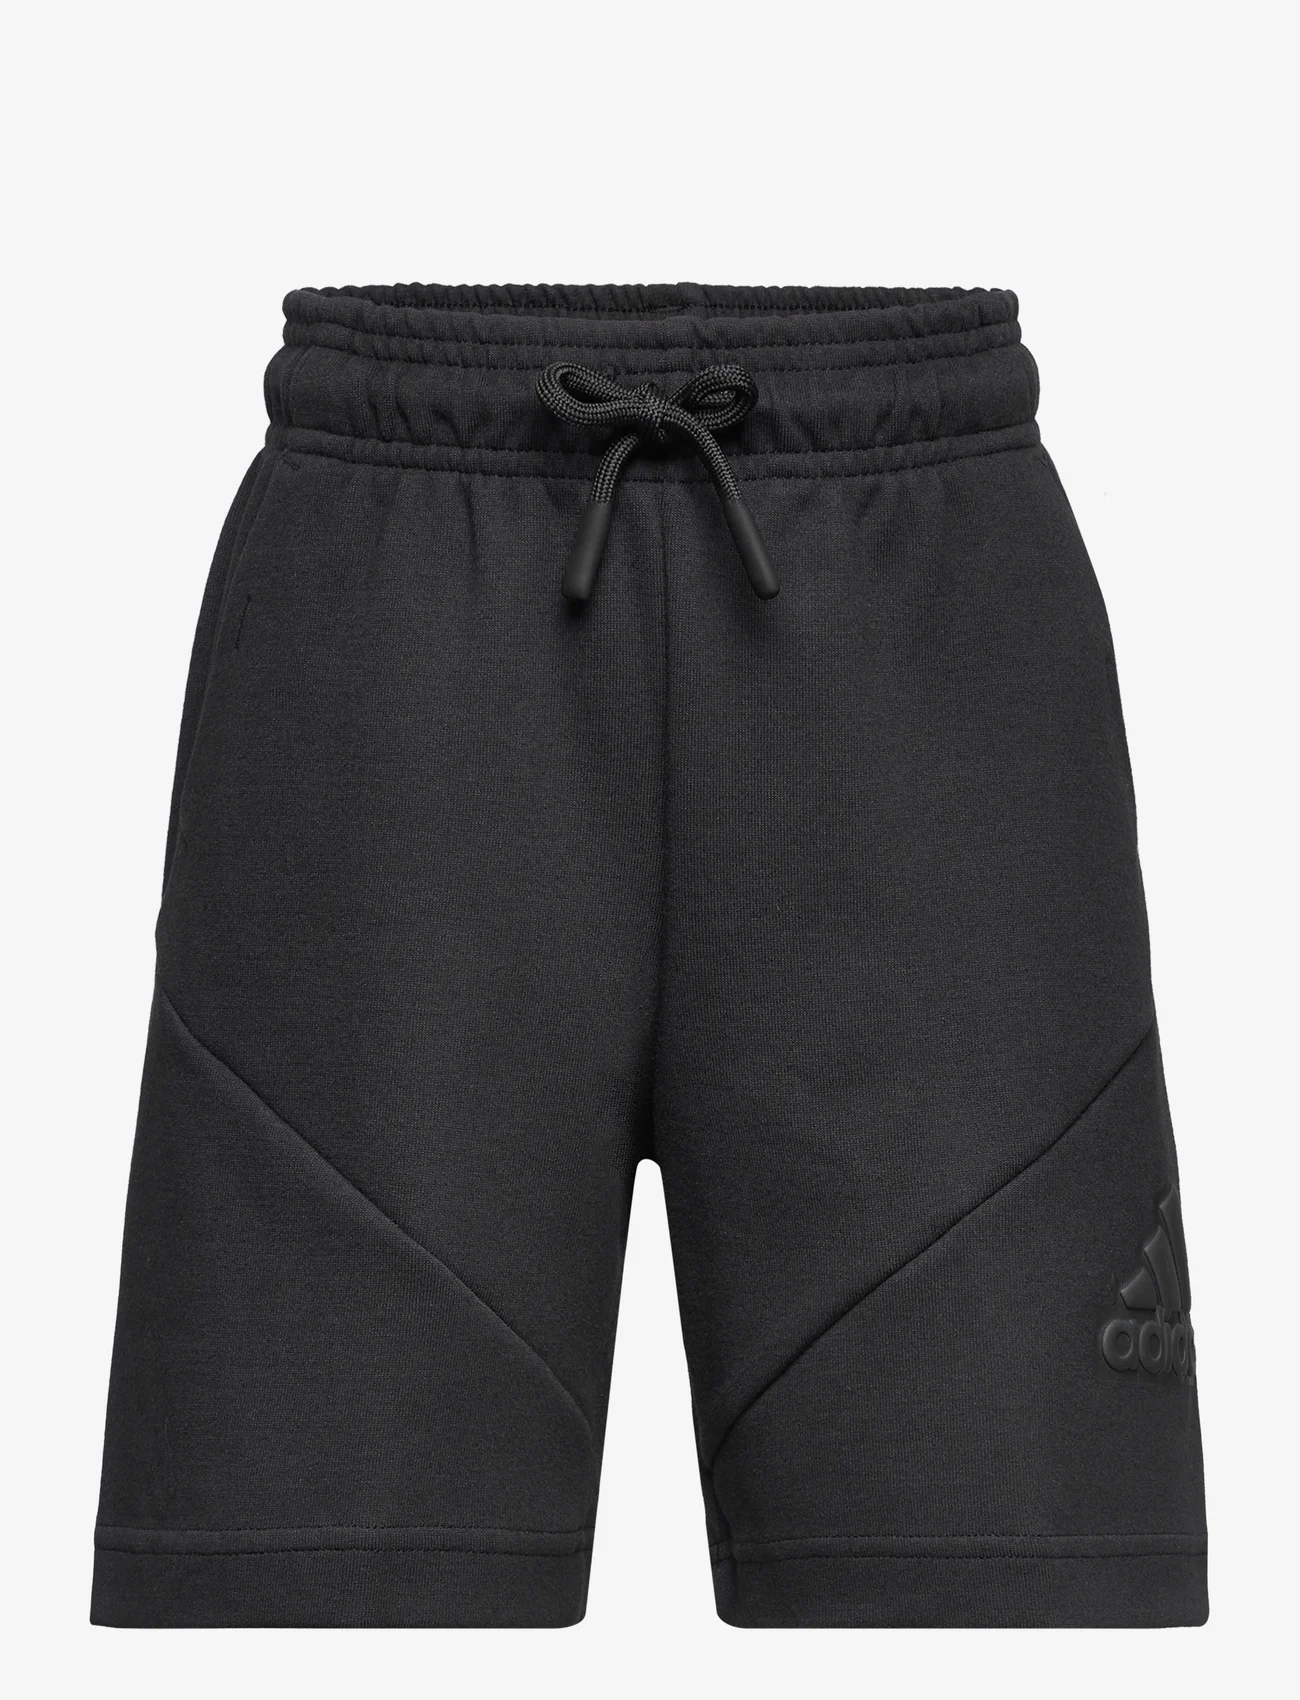 adidas Sportswear - U FI LOGO SH - sweatshorts - black/black - 0